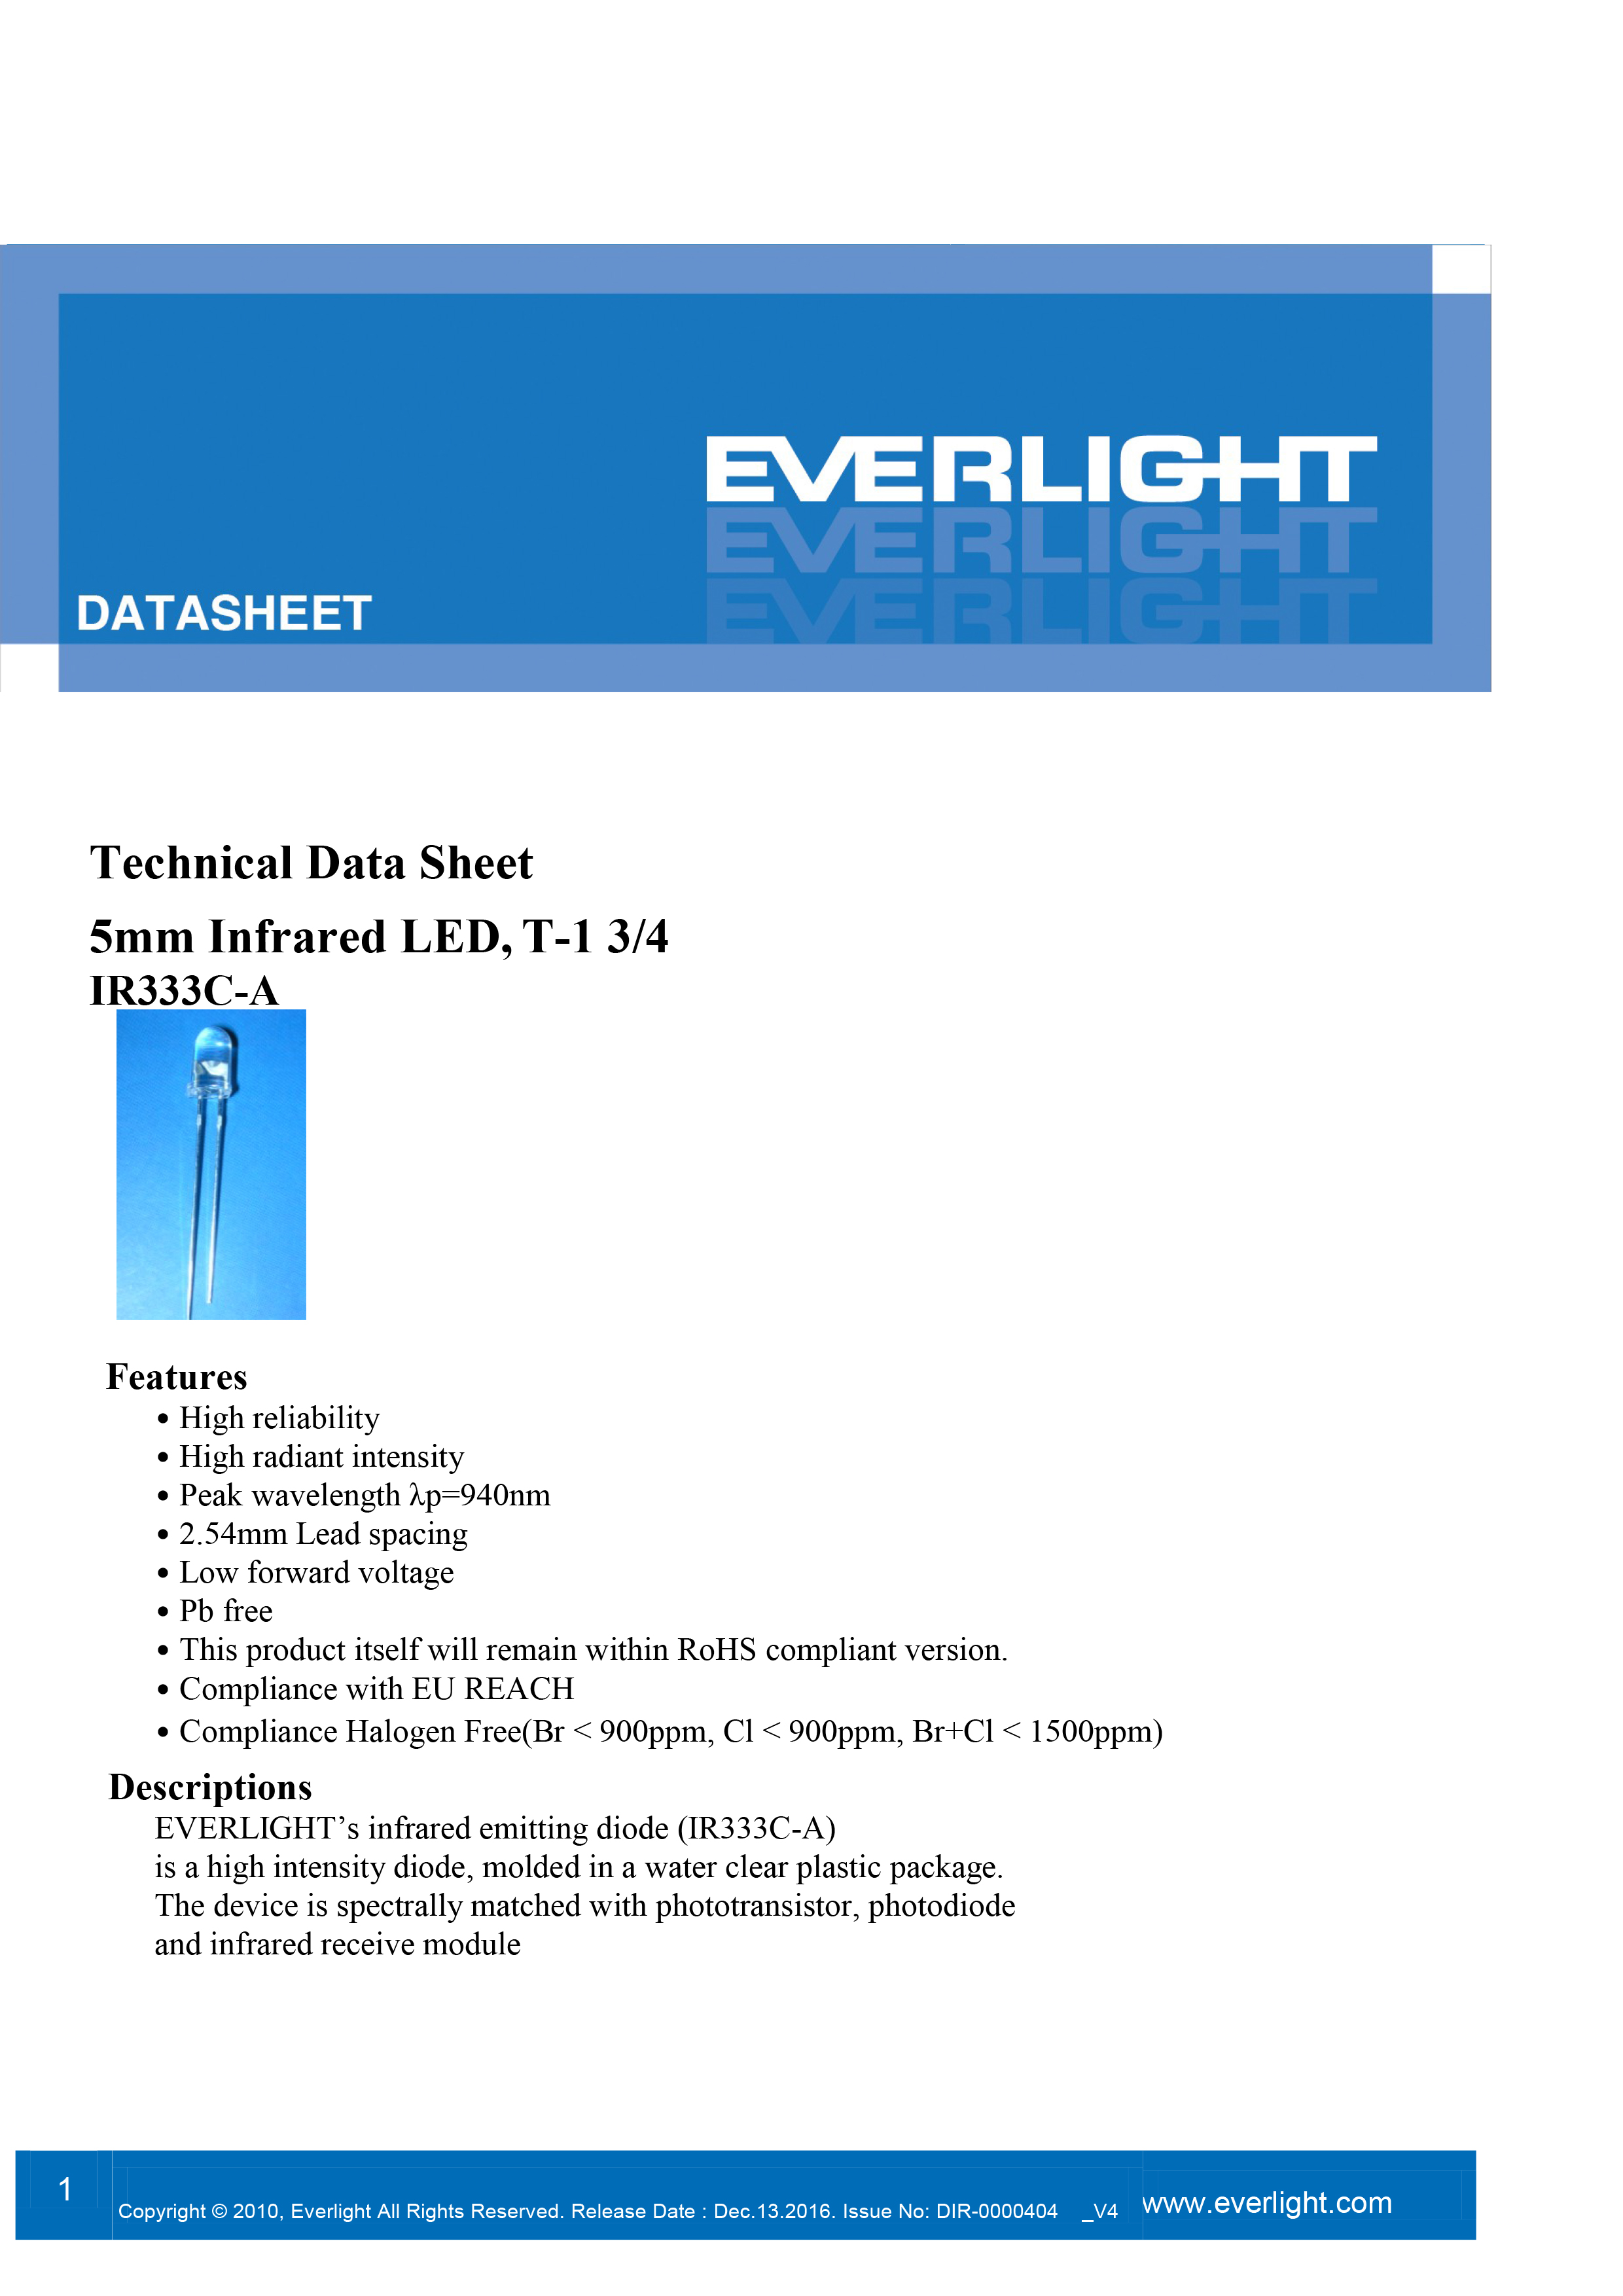 EVERLIGHT 5mm IR EMITTER IR333C-A Datasheet